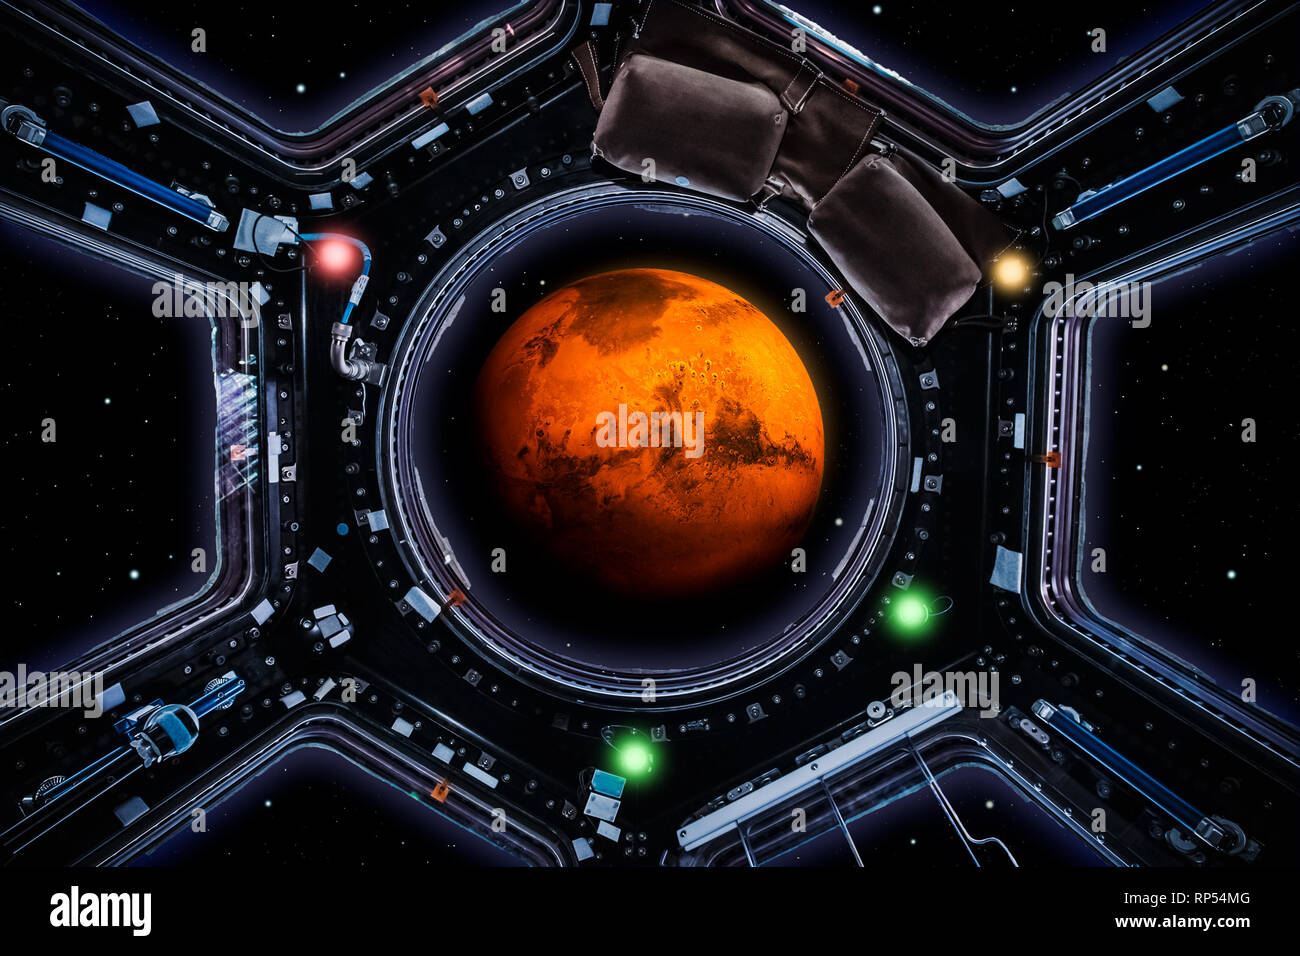 Reise zum Mars. Planet Mars 3D-Render durch Raumschiff Windows gesehen. Die Erforschung des Weltraums und Mission Concept Artwork. Artist Vision. Einige grafische eleme Stockfoto